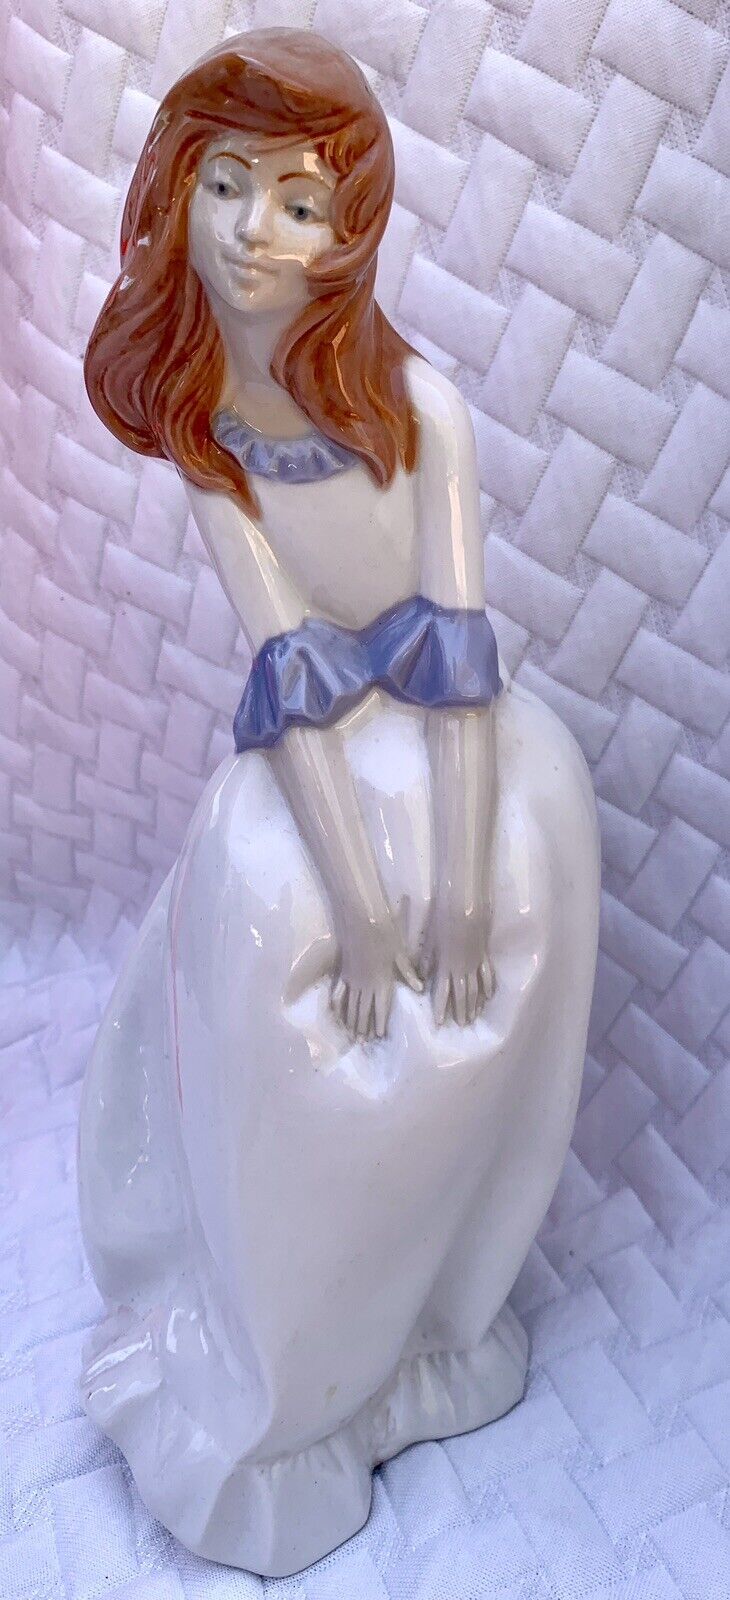 Mirmasu Glazed Porcelain Lady Woman Girl Figurine Handmade In Spain 12” Vintage